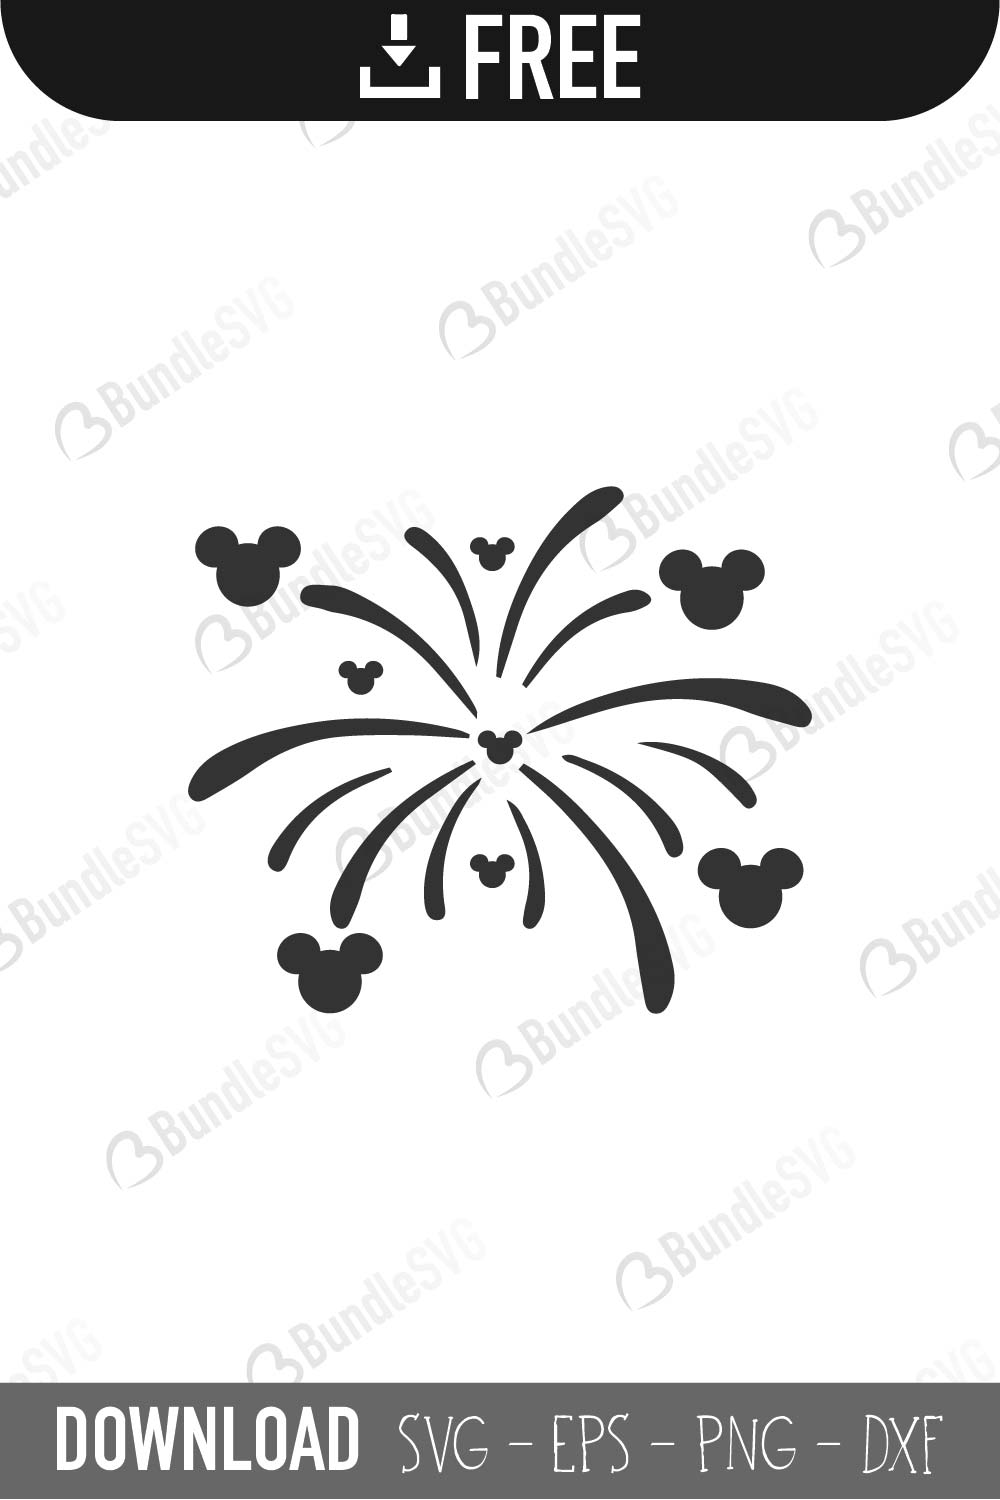 Free Free 111 Fireworks Cricut Disney Castle Svg SVG PNG EPS DXF File